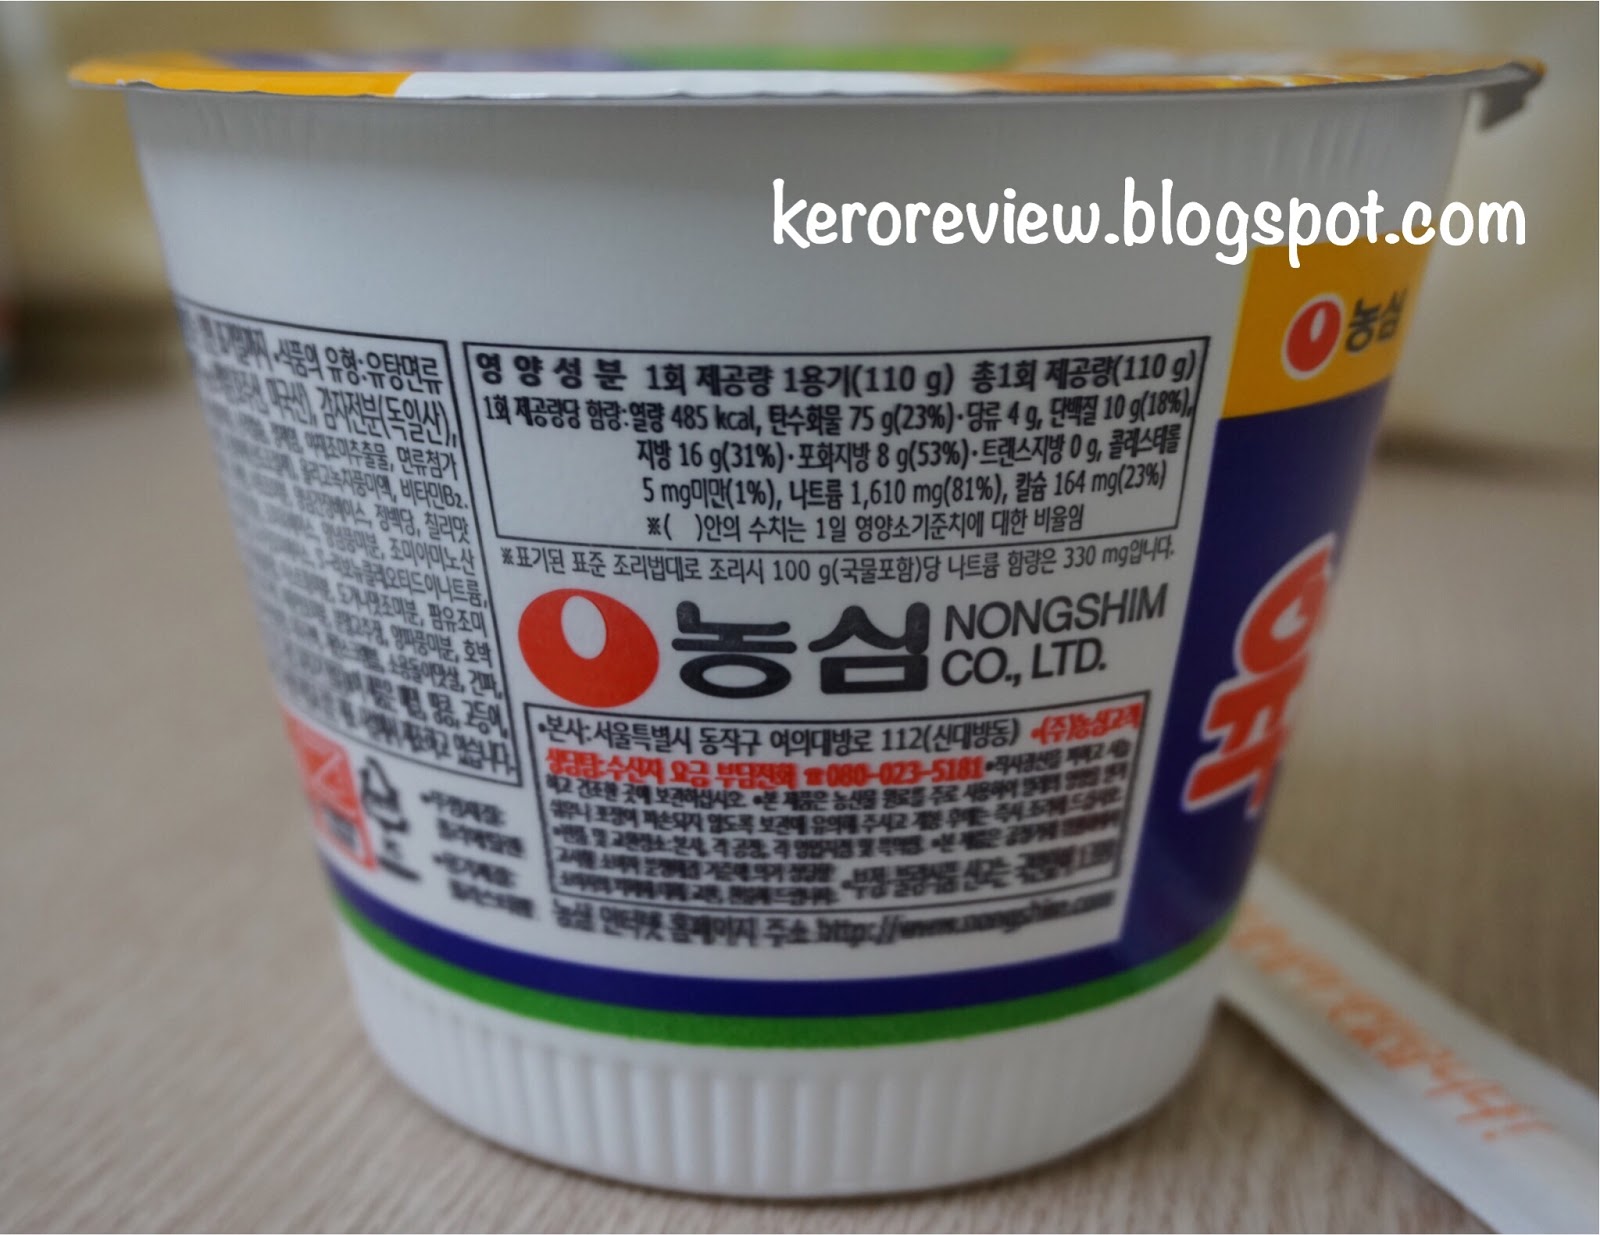 รีวิว นงชิม ยุกเกจัง บะหมี่ถ้วยรสเนื้อเผ็ด (CR) Review Nongshim Yukejang Instant Noodles Bowl.